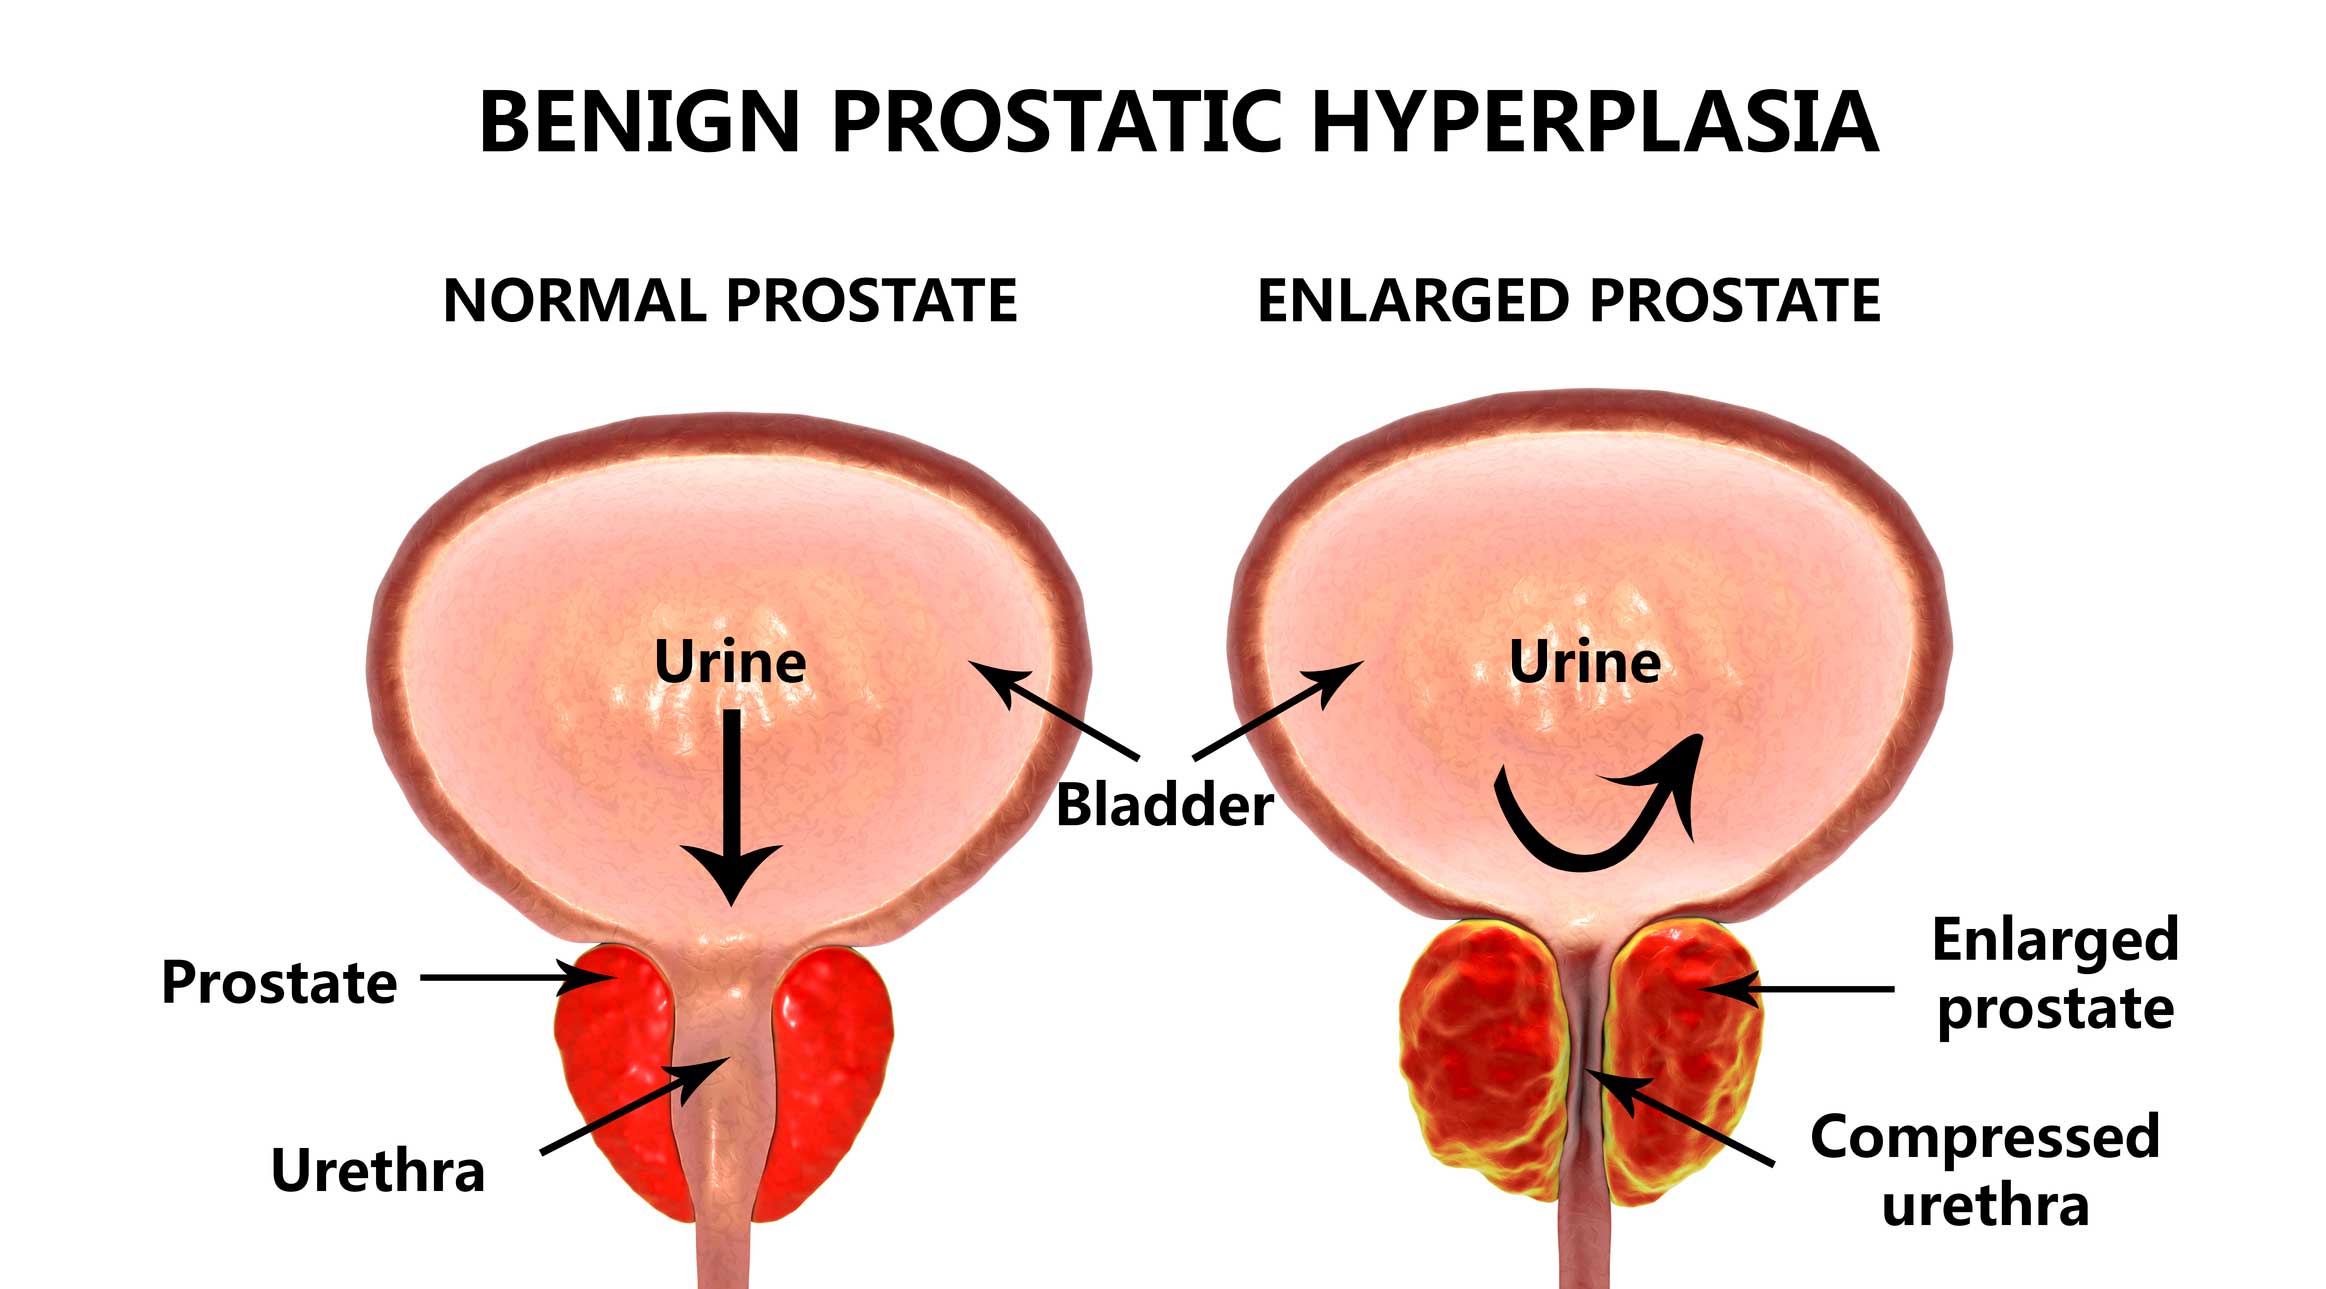 Enlarged prostate.